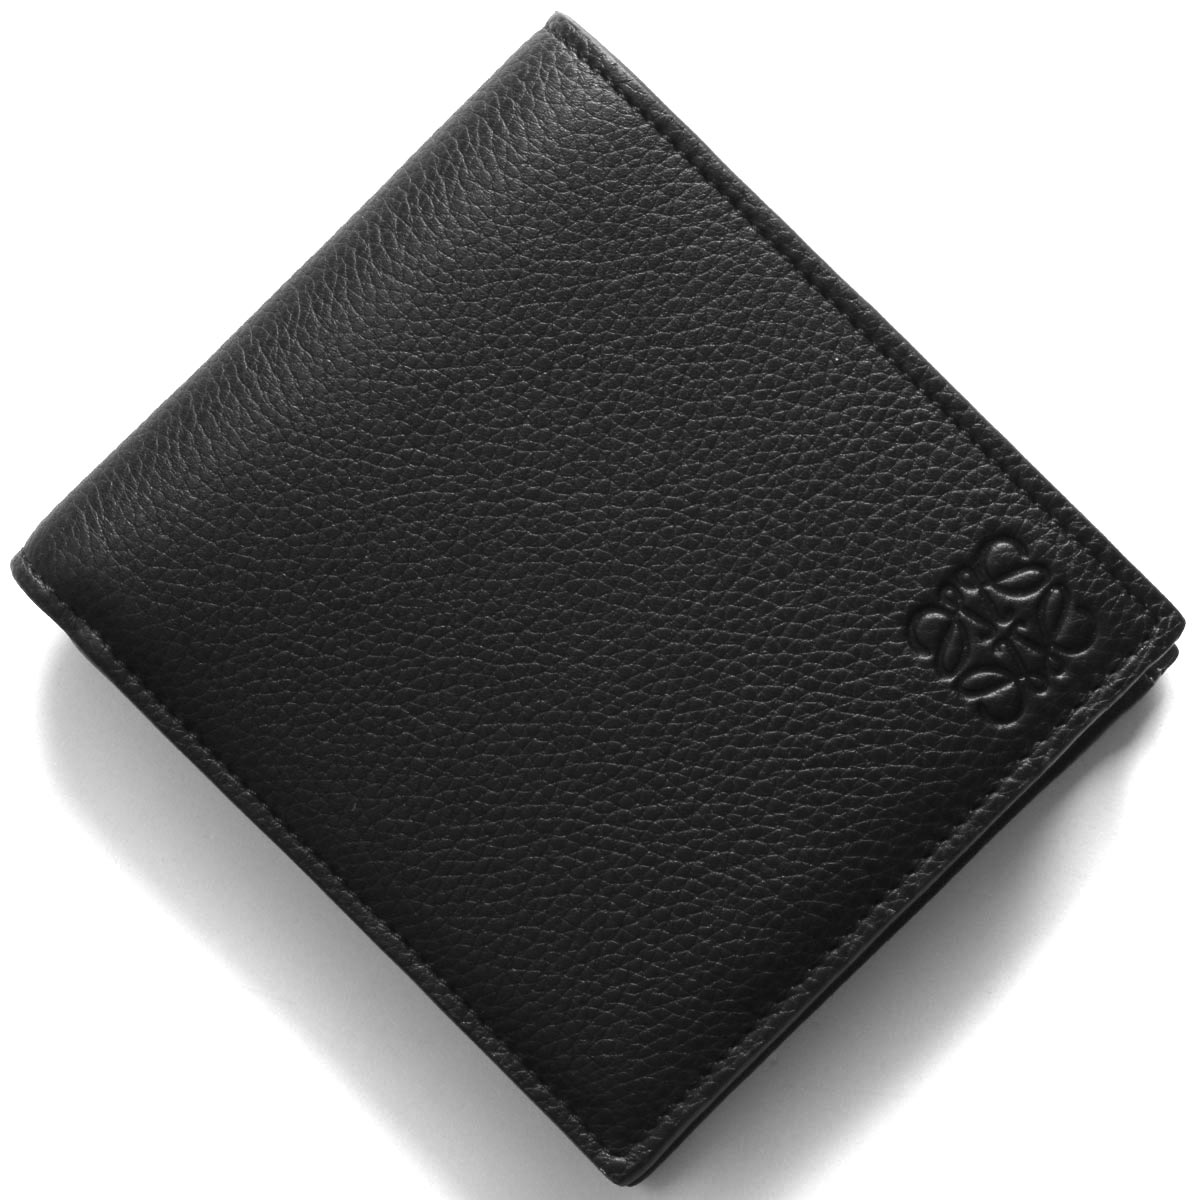 楽天市場 ロエベ 二つ折り財布 財布 メンズ スタンプ アナグラム ブラック Cx01 1100 21年春夏新作 Loewe ブランドショップ ブルーク